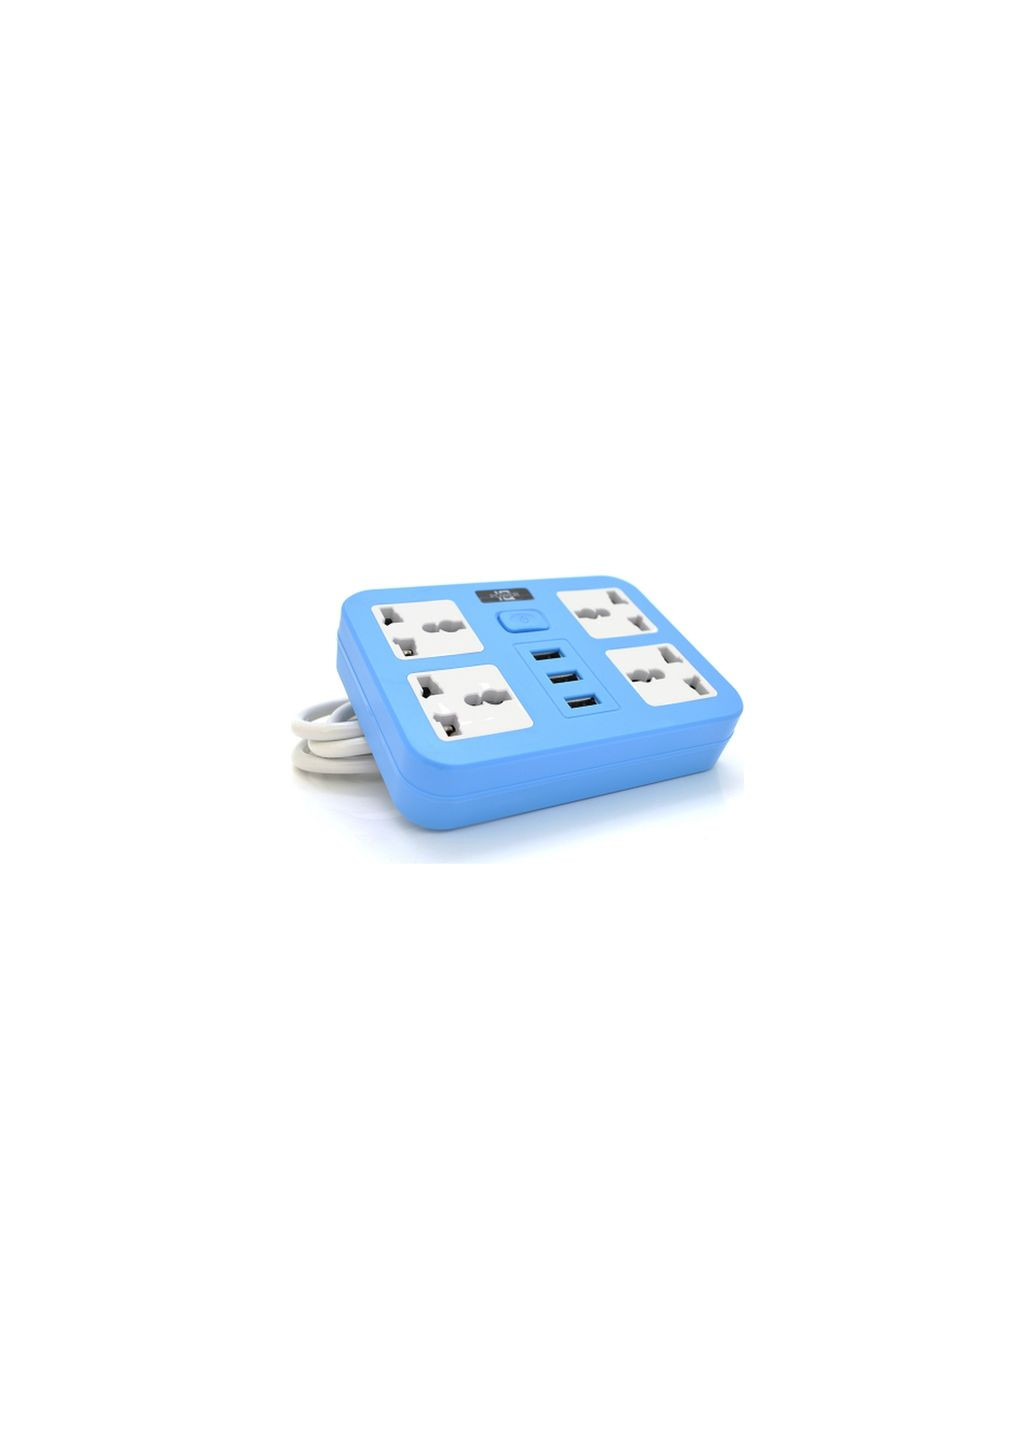 Мережевий фільтр живлення TВТ15, 4роз, 3*USB Blue (ТВ-Т15-Blue) Voltronic tв-т15, 4роз, 3*usb blue (268144384)